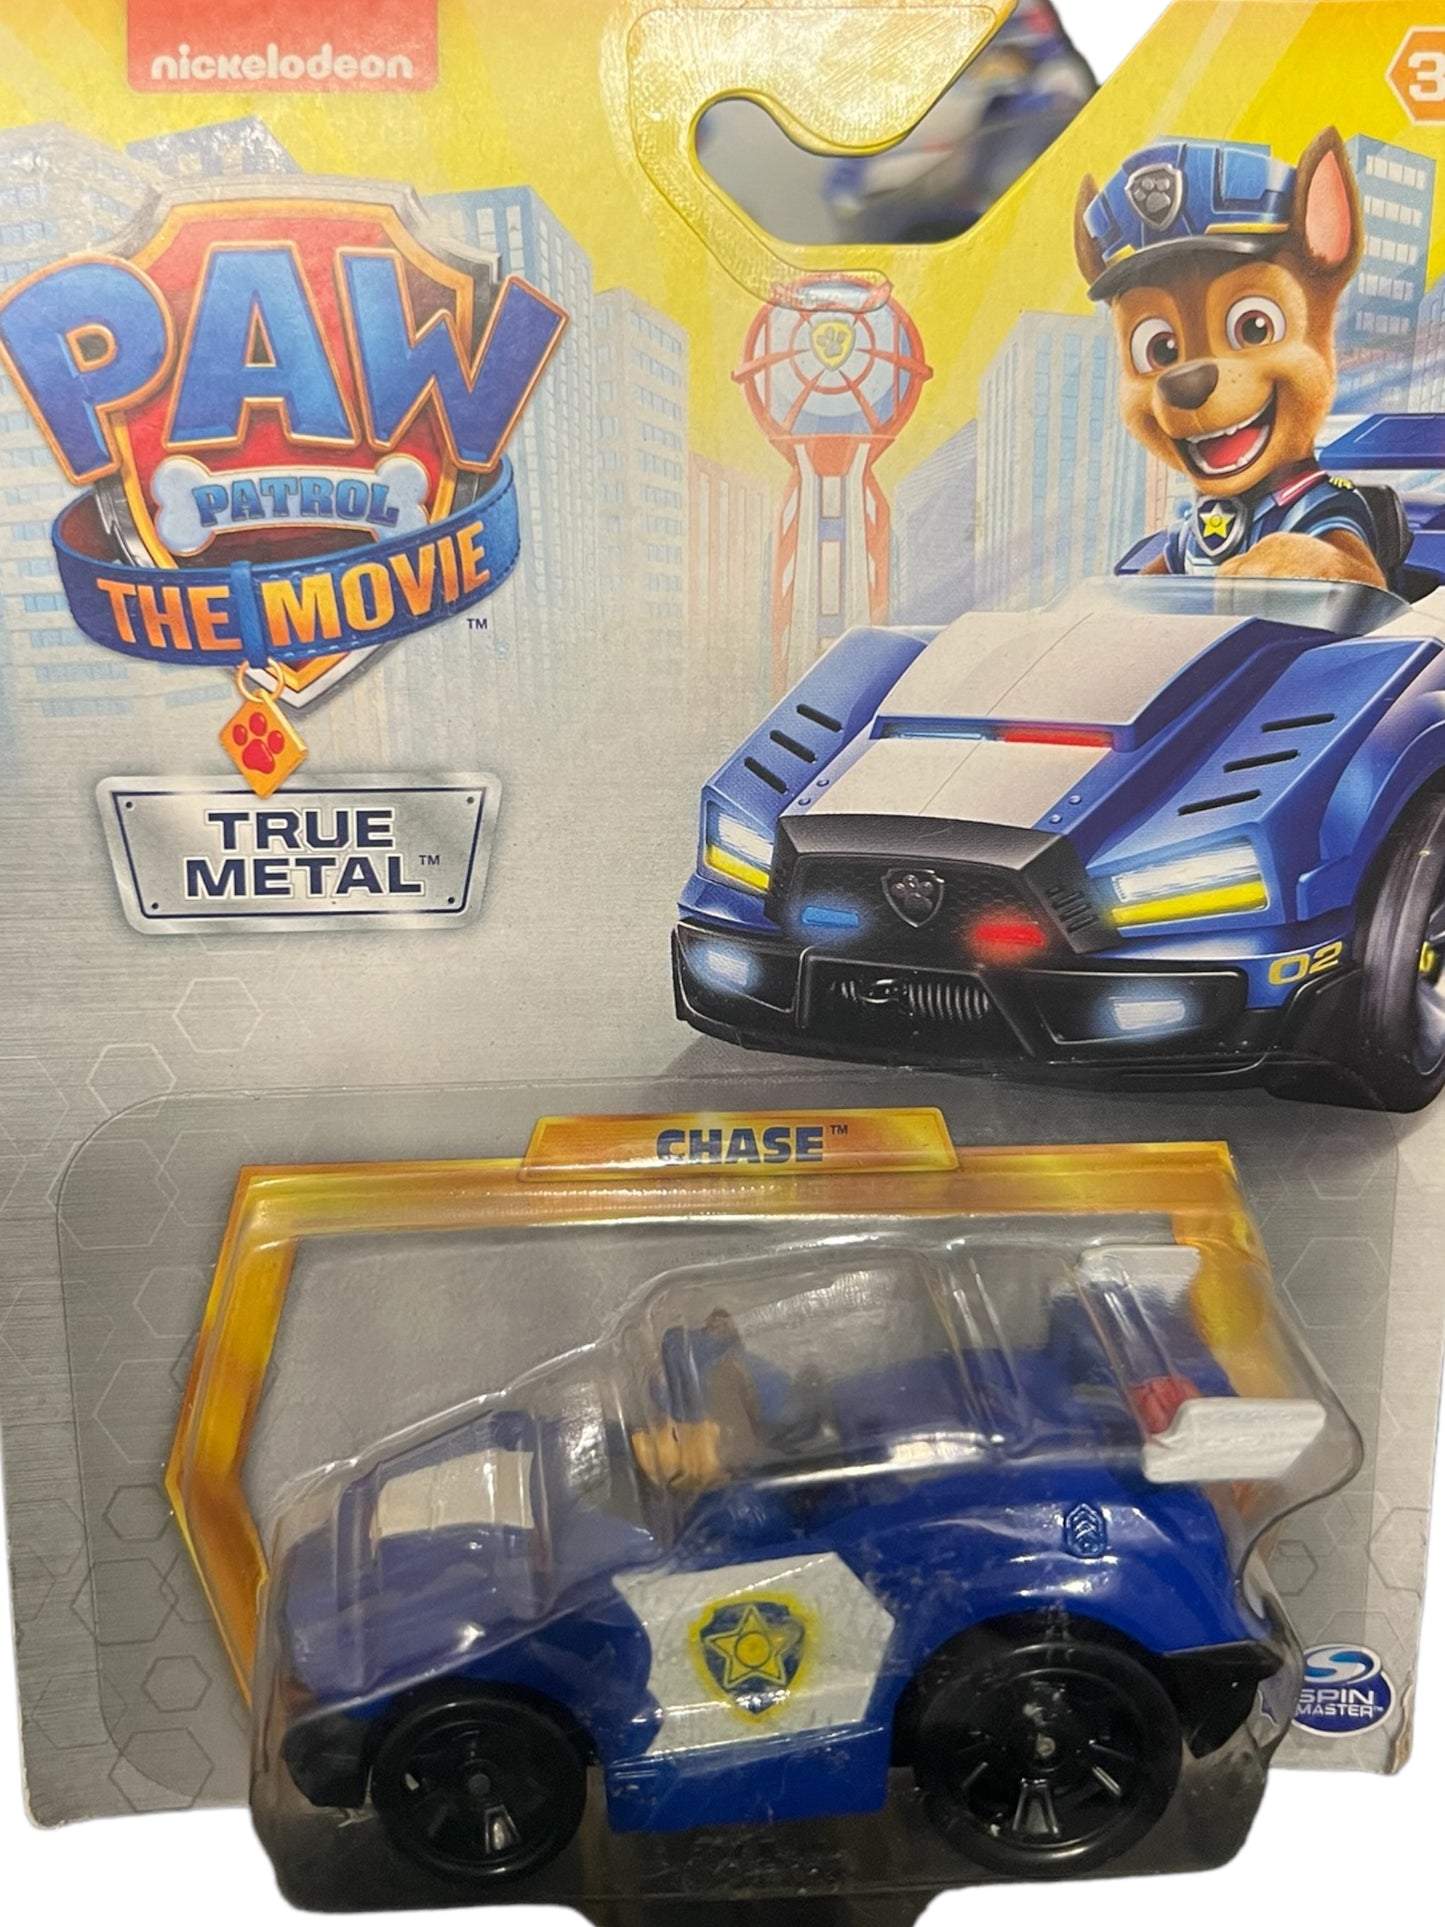 Nickelodeon PAW Patrol: The Movie CHASE Die-Cast Vehicle True Metal Car Toy